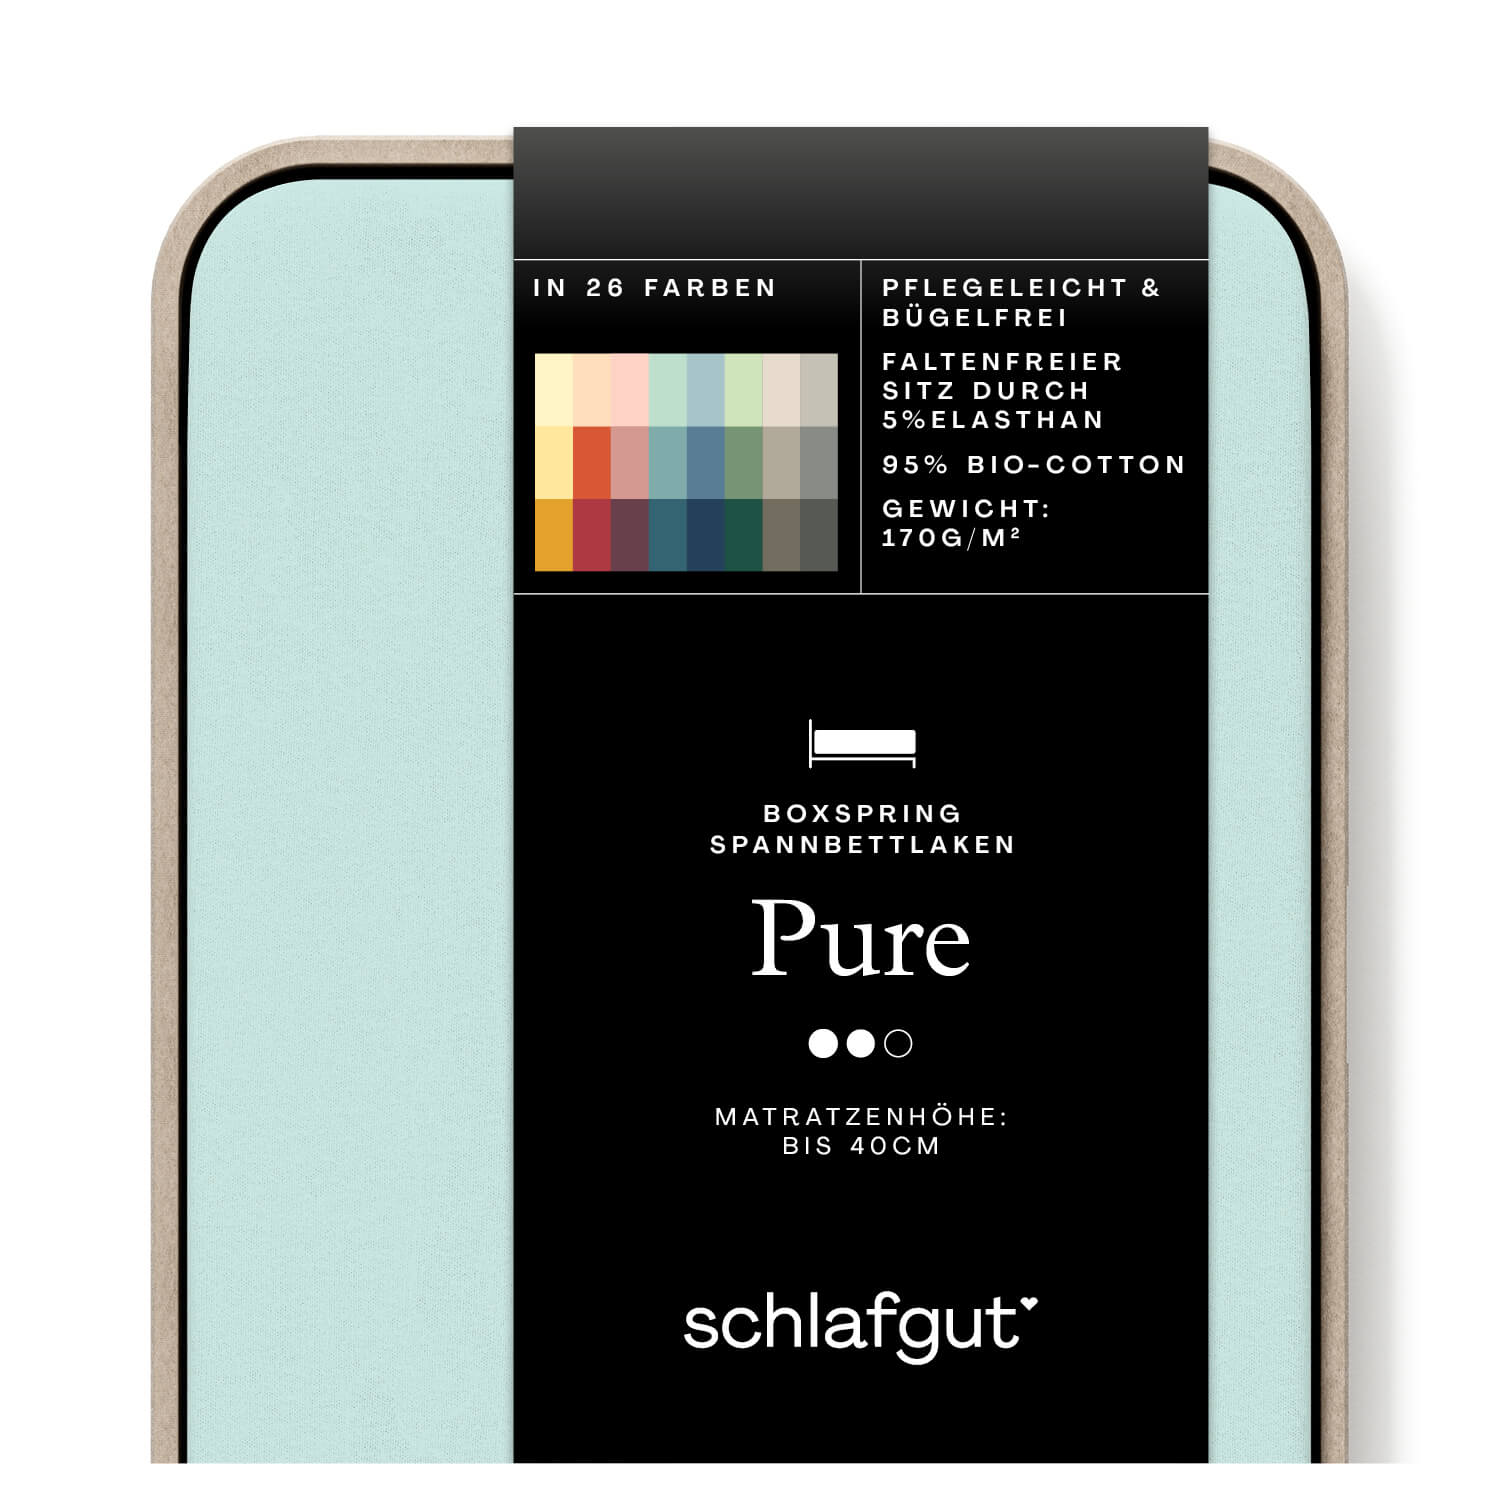 Das Produktbild vom Spannbettlaken der Reihe Pure Boxspring in Farbe petrol light von Schlafgut